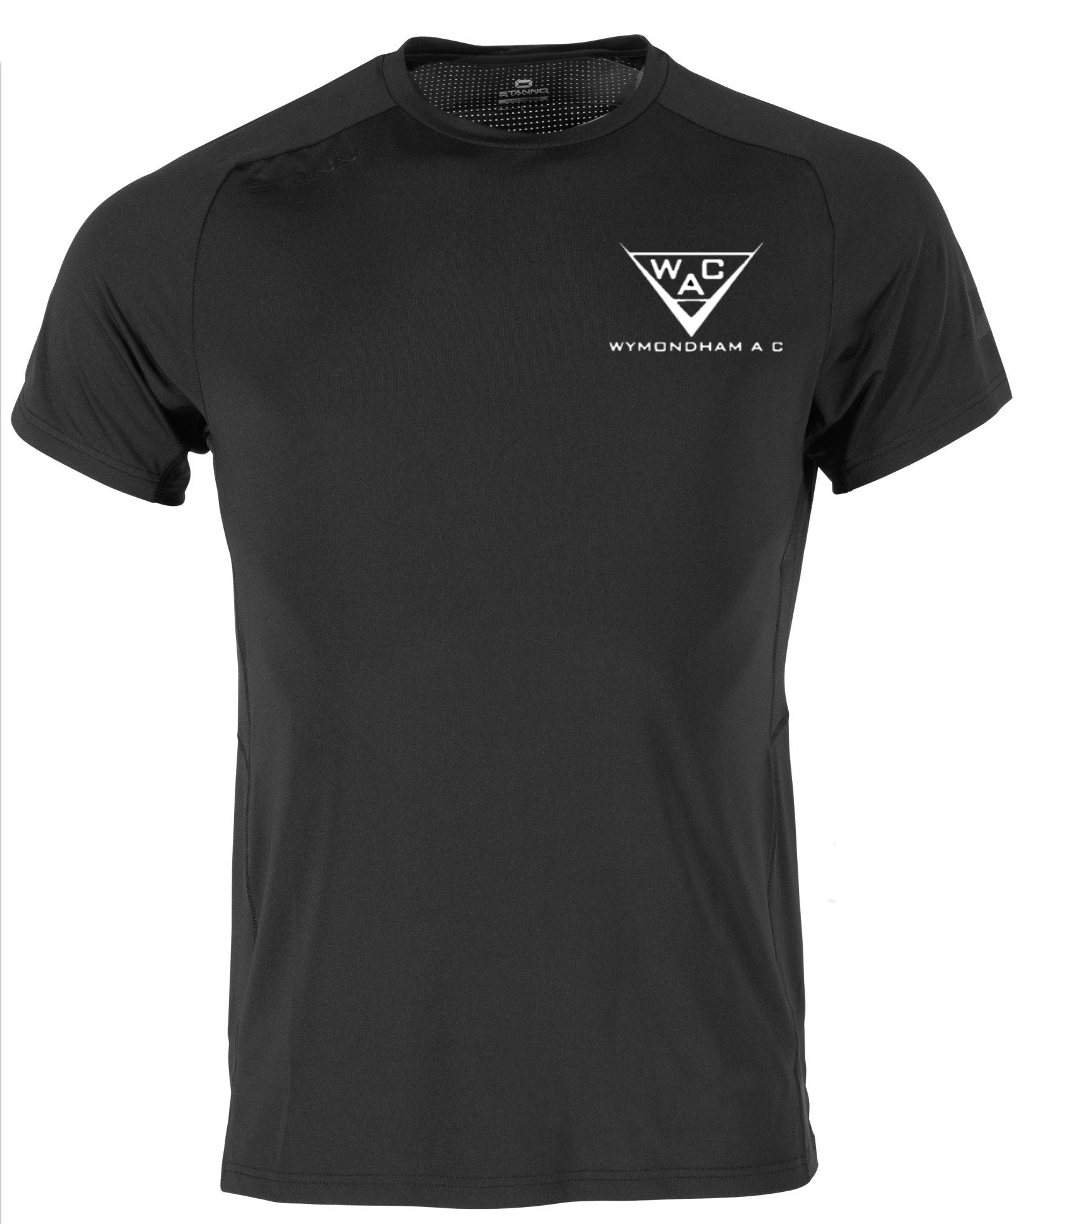 WAC Functionals Running/Training Shirt